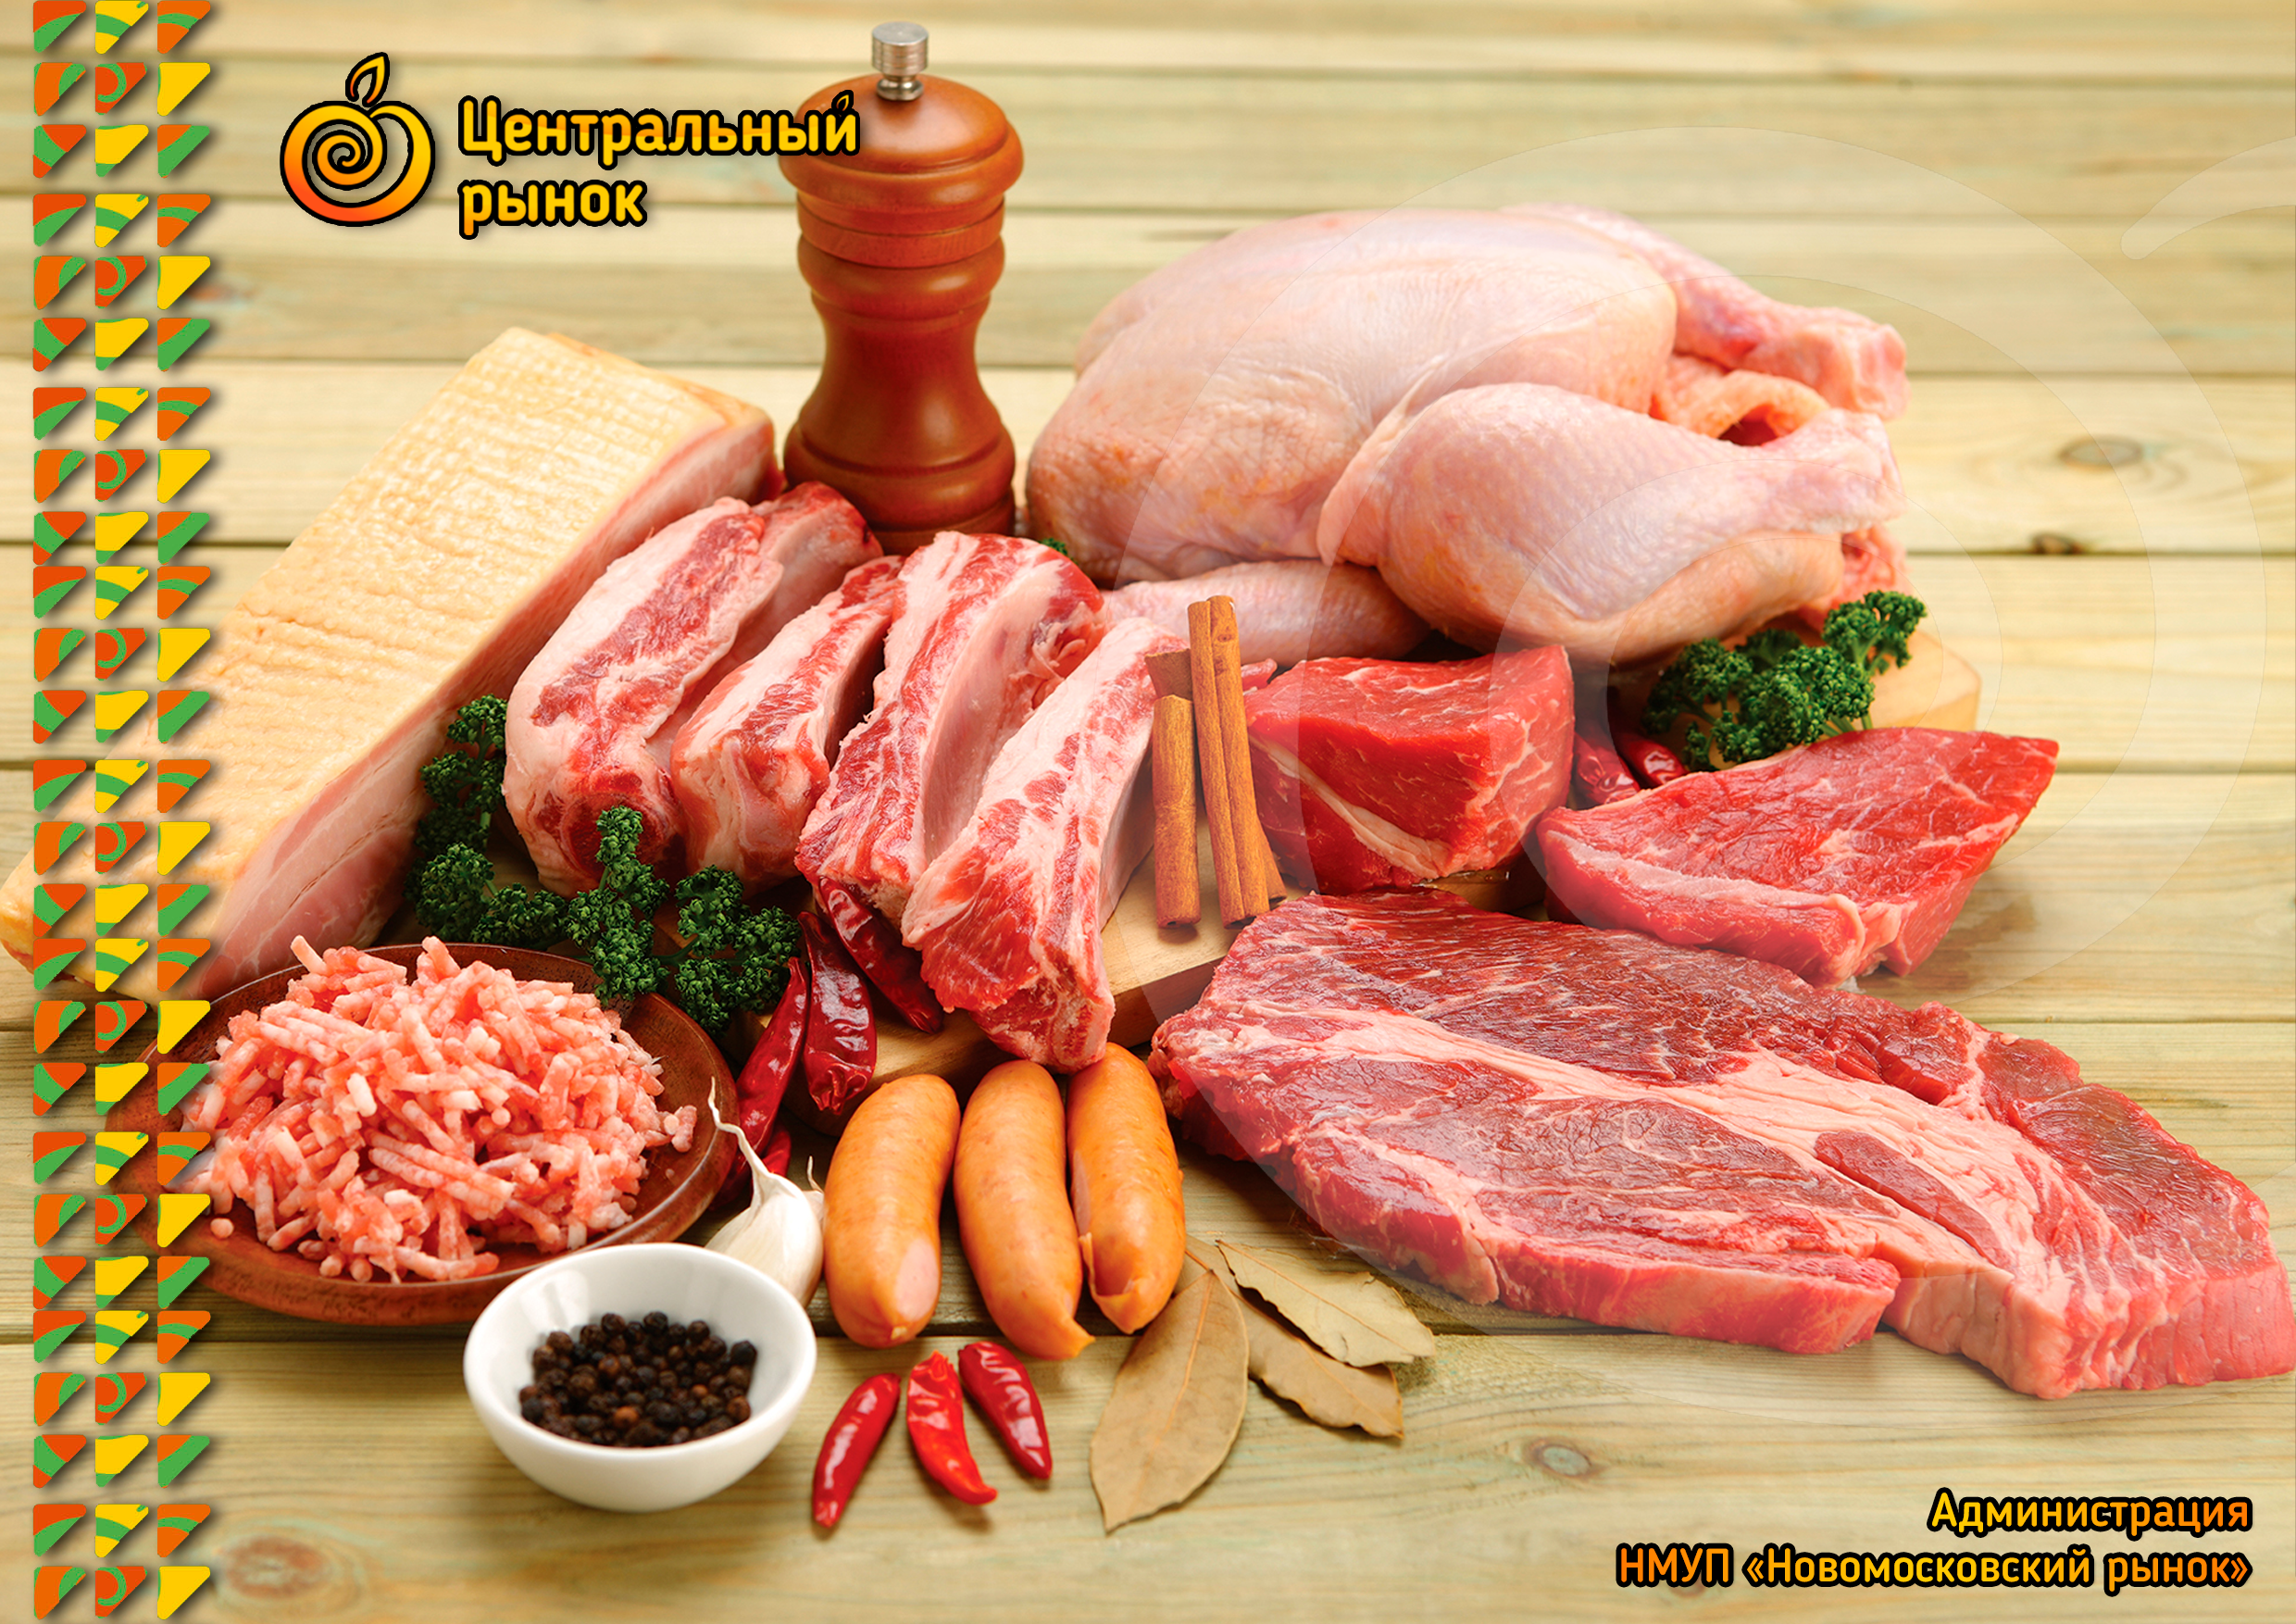 Animals meat. Мясо. Мясные изделия. Мясо и мясная продукция. Фермерские мясные продукты.